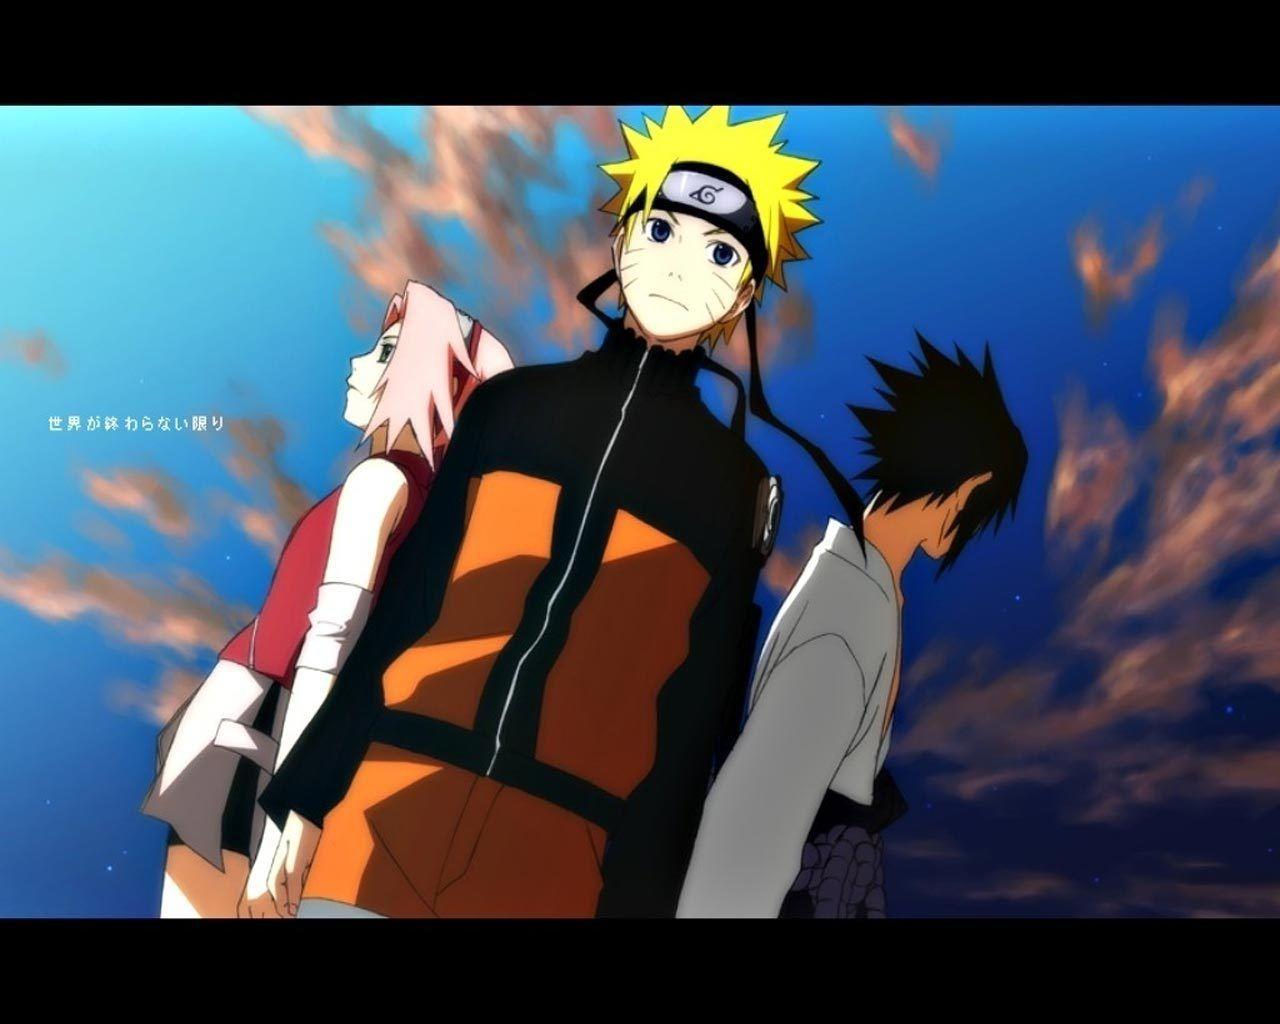 Shonen Jump: Naruto Shippuden image naruto HD wallpaper